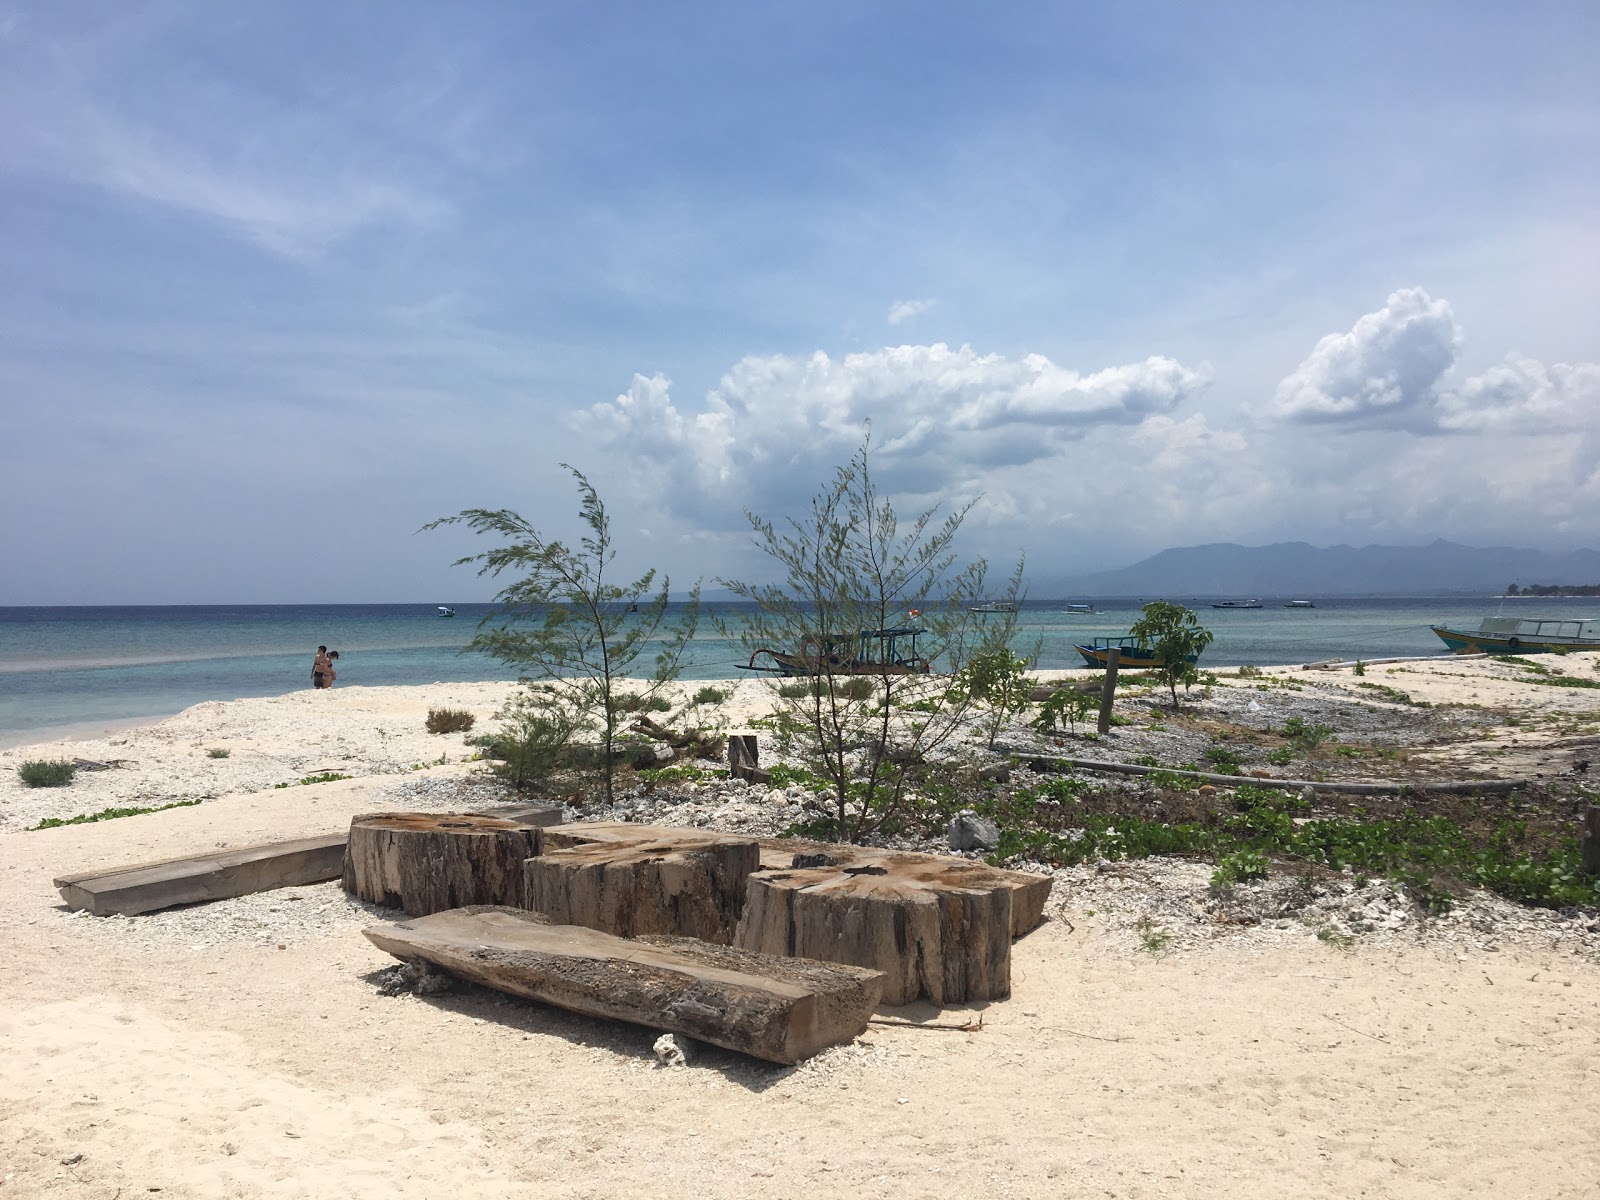 Fotografie cu Gili Meno Mimpi Beach - locul popular printre cunoscătorii de relaxare